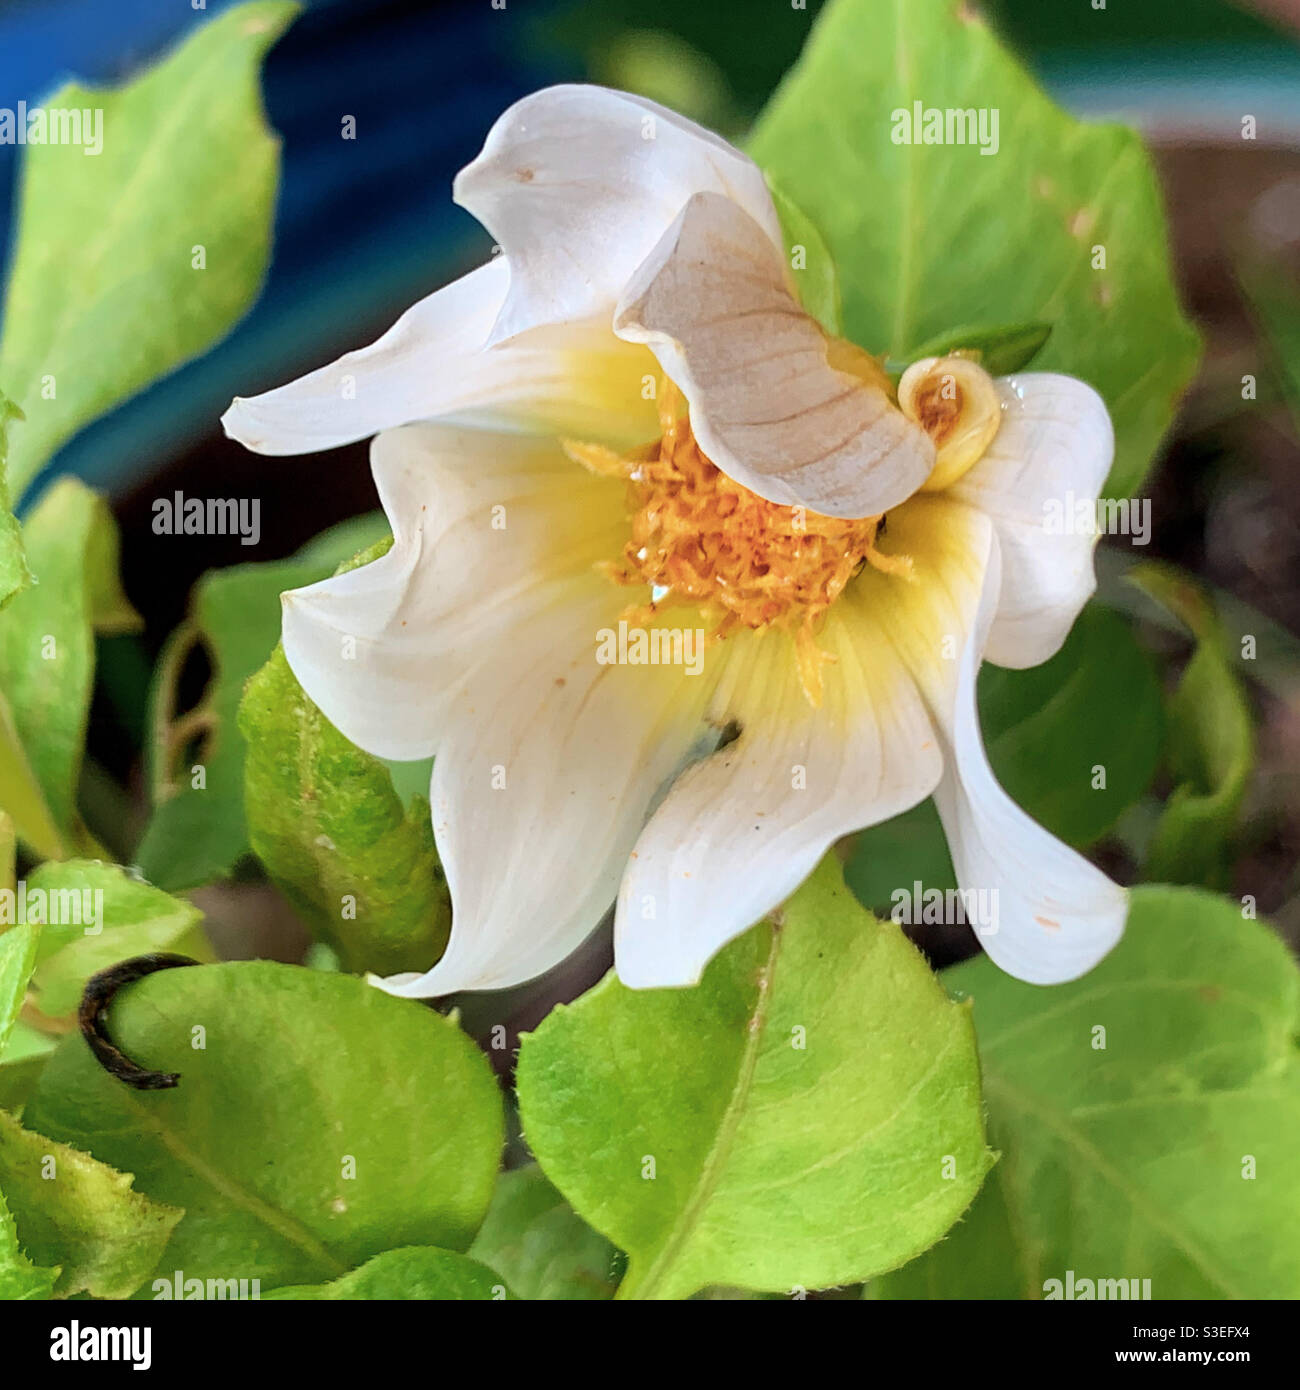 Arte naturale bei petali artistici curvati sul bianco cremoso e giallo Dahlia fiore apertura provvisoriamente, macro Foto Stock